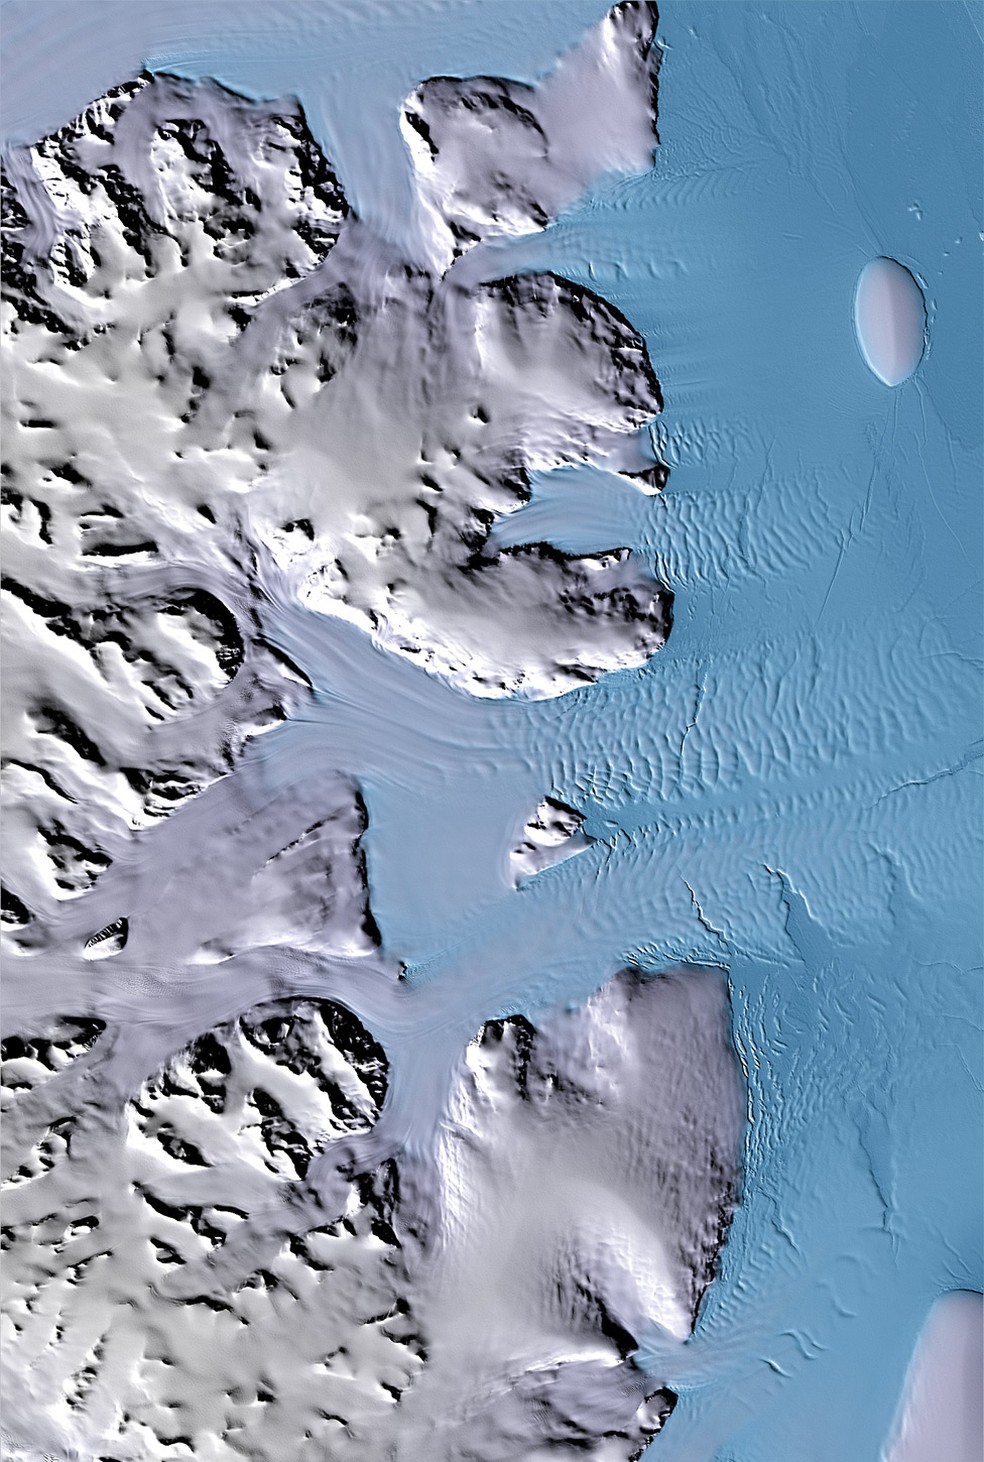 Glaciares às margens do Mar de Weddell na península da Antártida — Foto: DLR/BBC